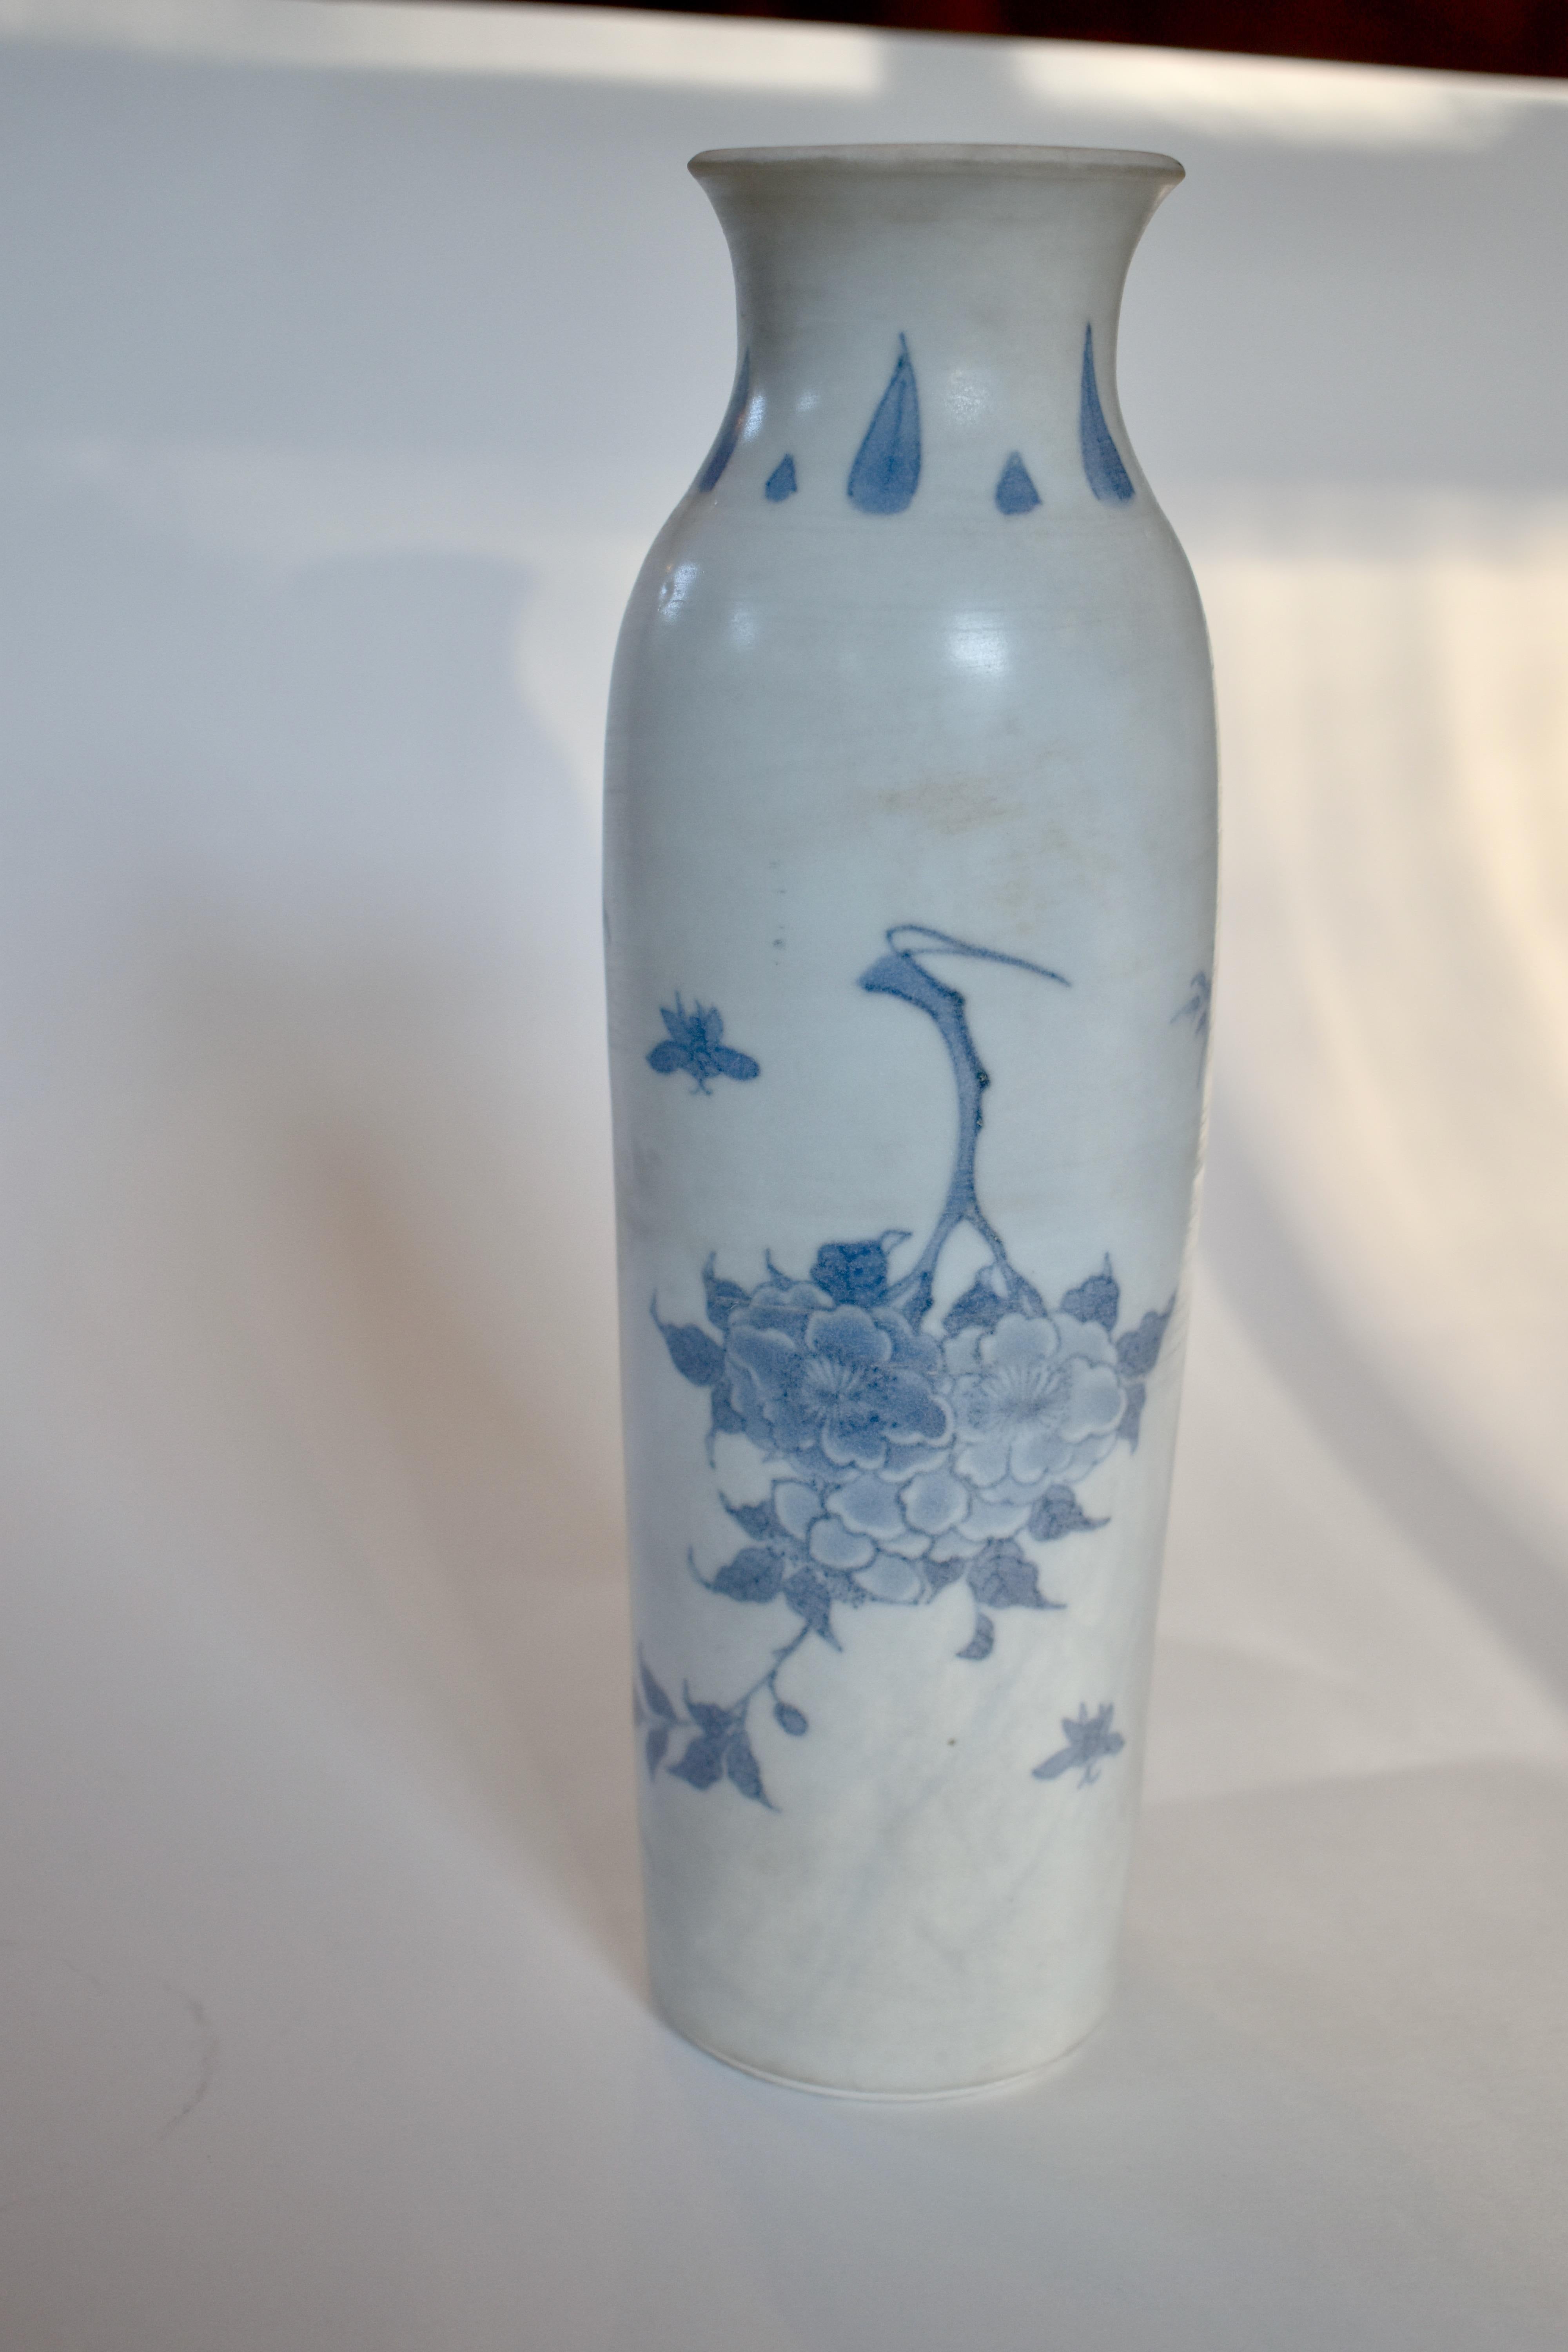 Vase à manchon en porcelaine bleu et blanc de la période de transition de la Collection Hatcher. 

Cet élégant vase faisait partie d'un trésor récupéré par le capitaine Michael Hatcher dans l'épave d'un navire coulé en mer de Chine méridionale en